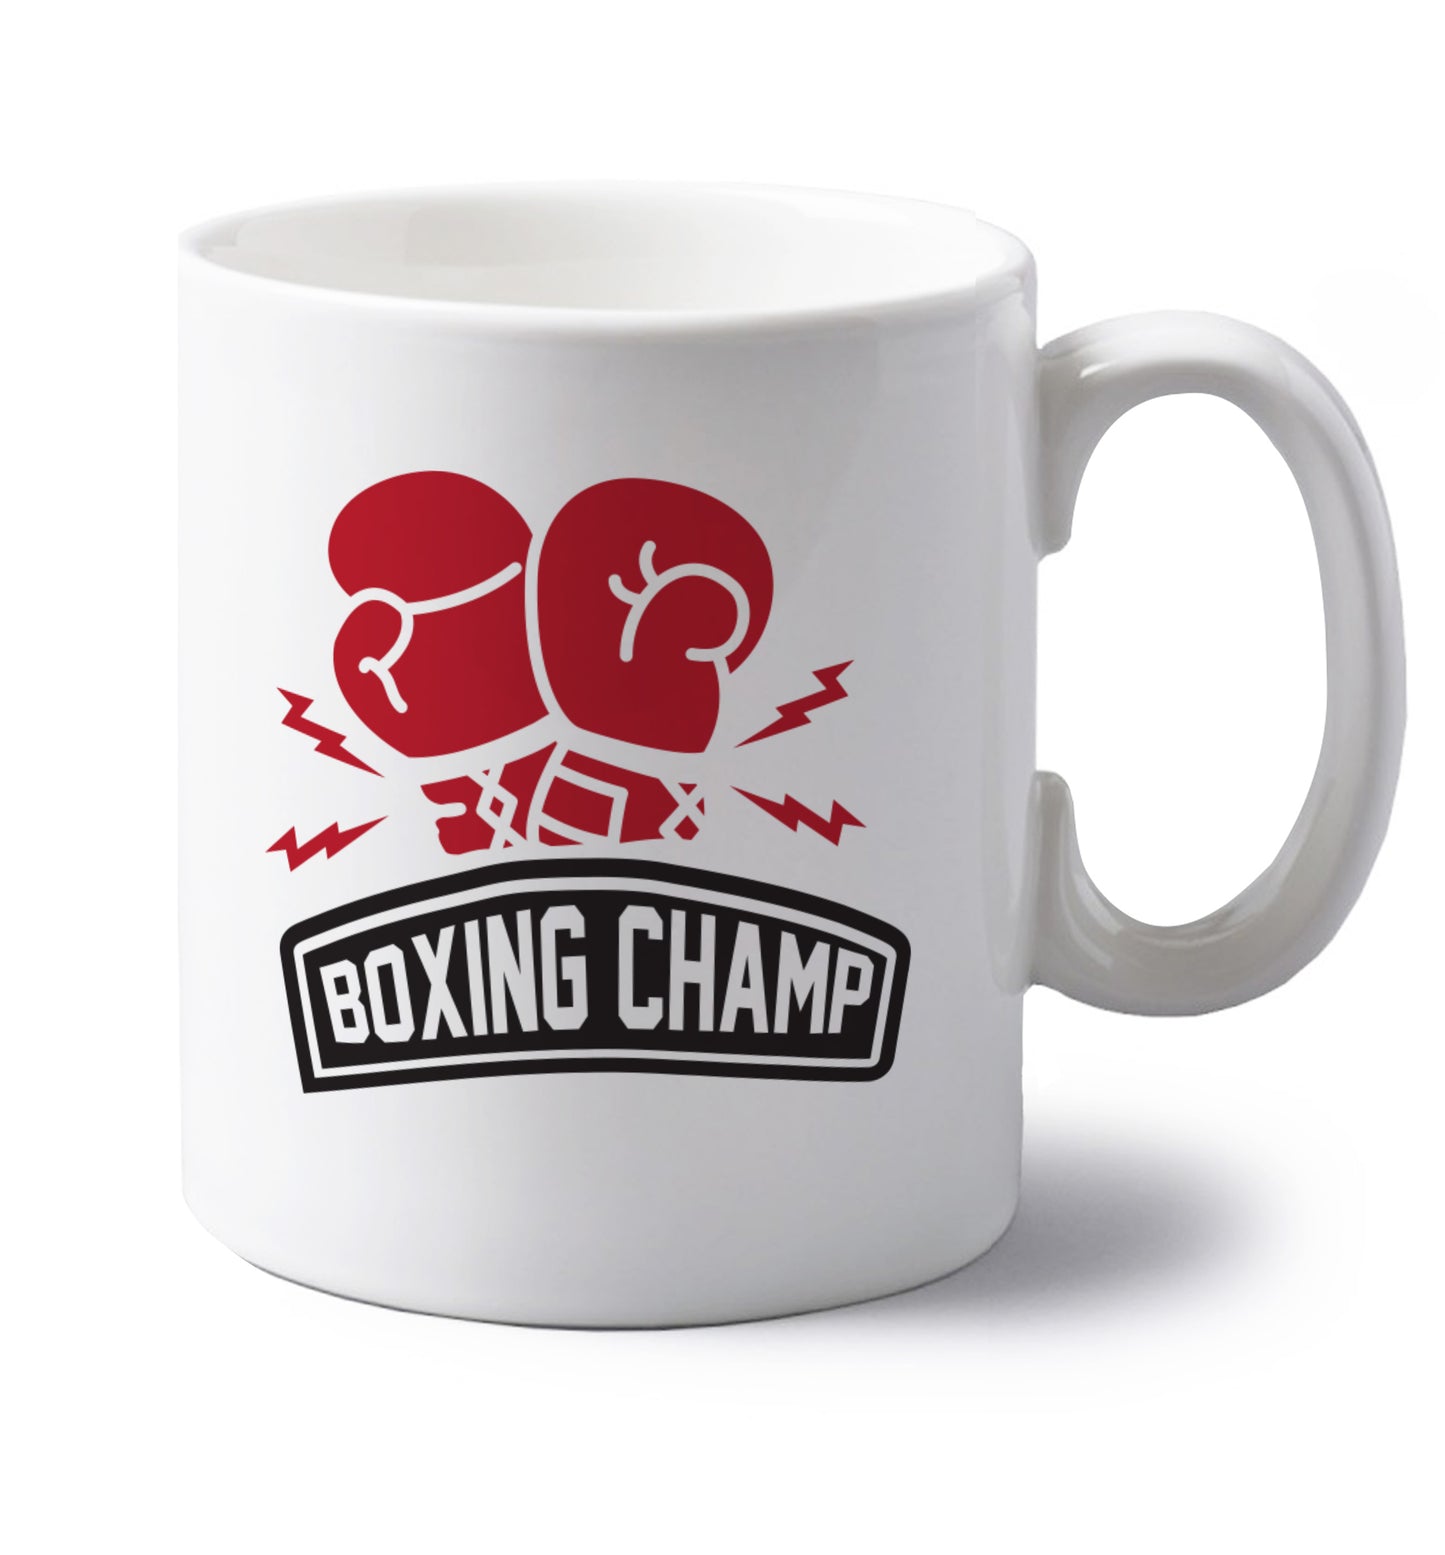 Boxing Champ left handed white ceramic mug 